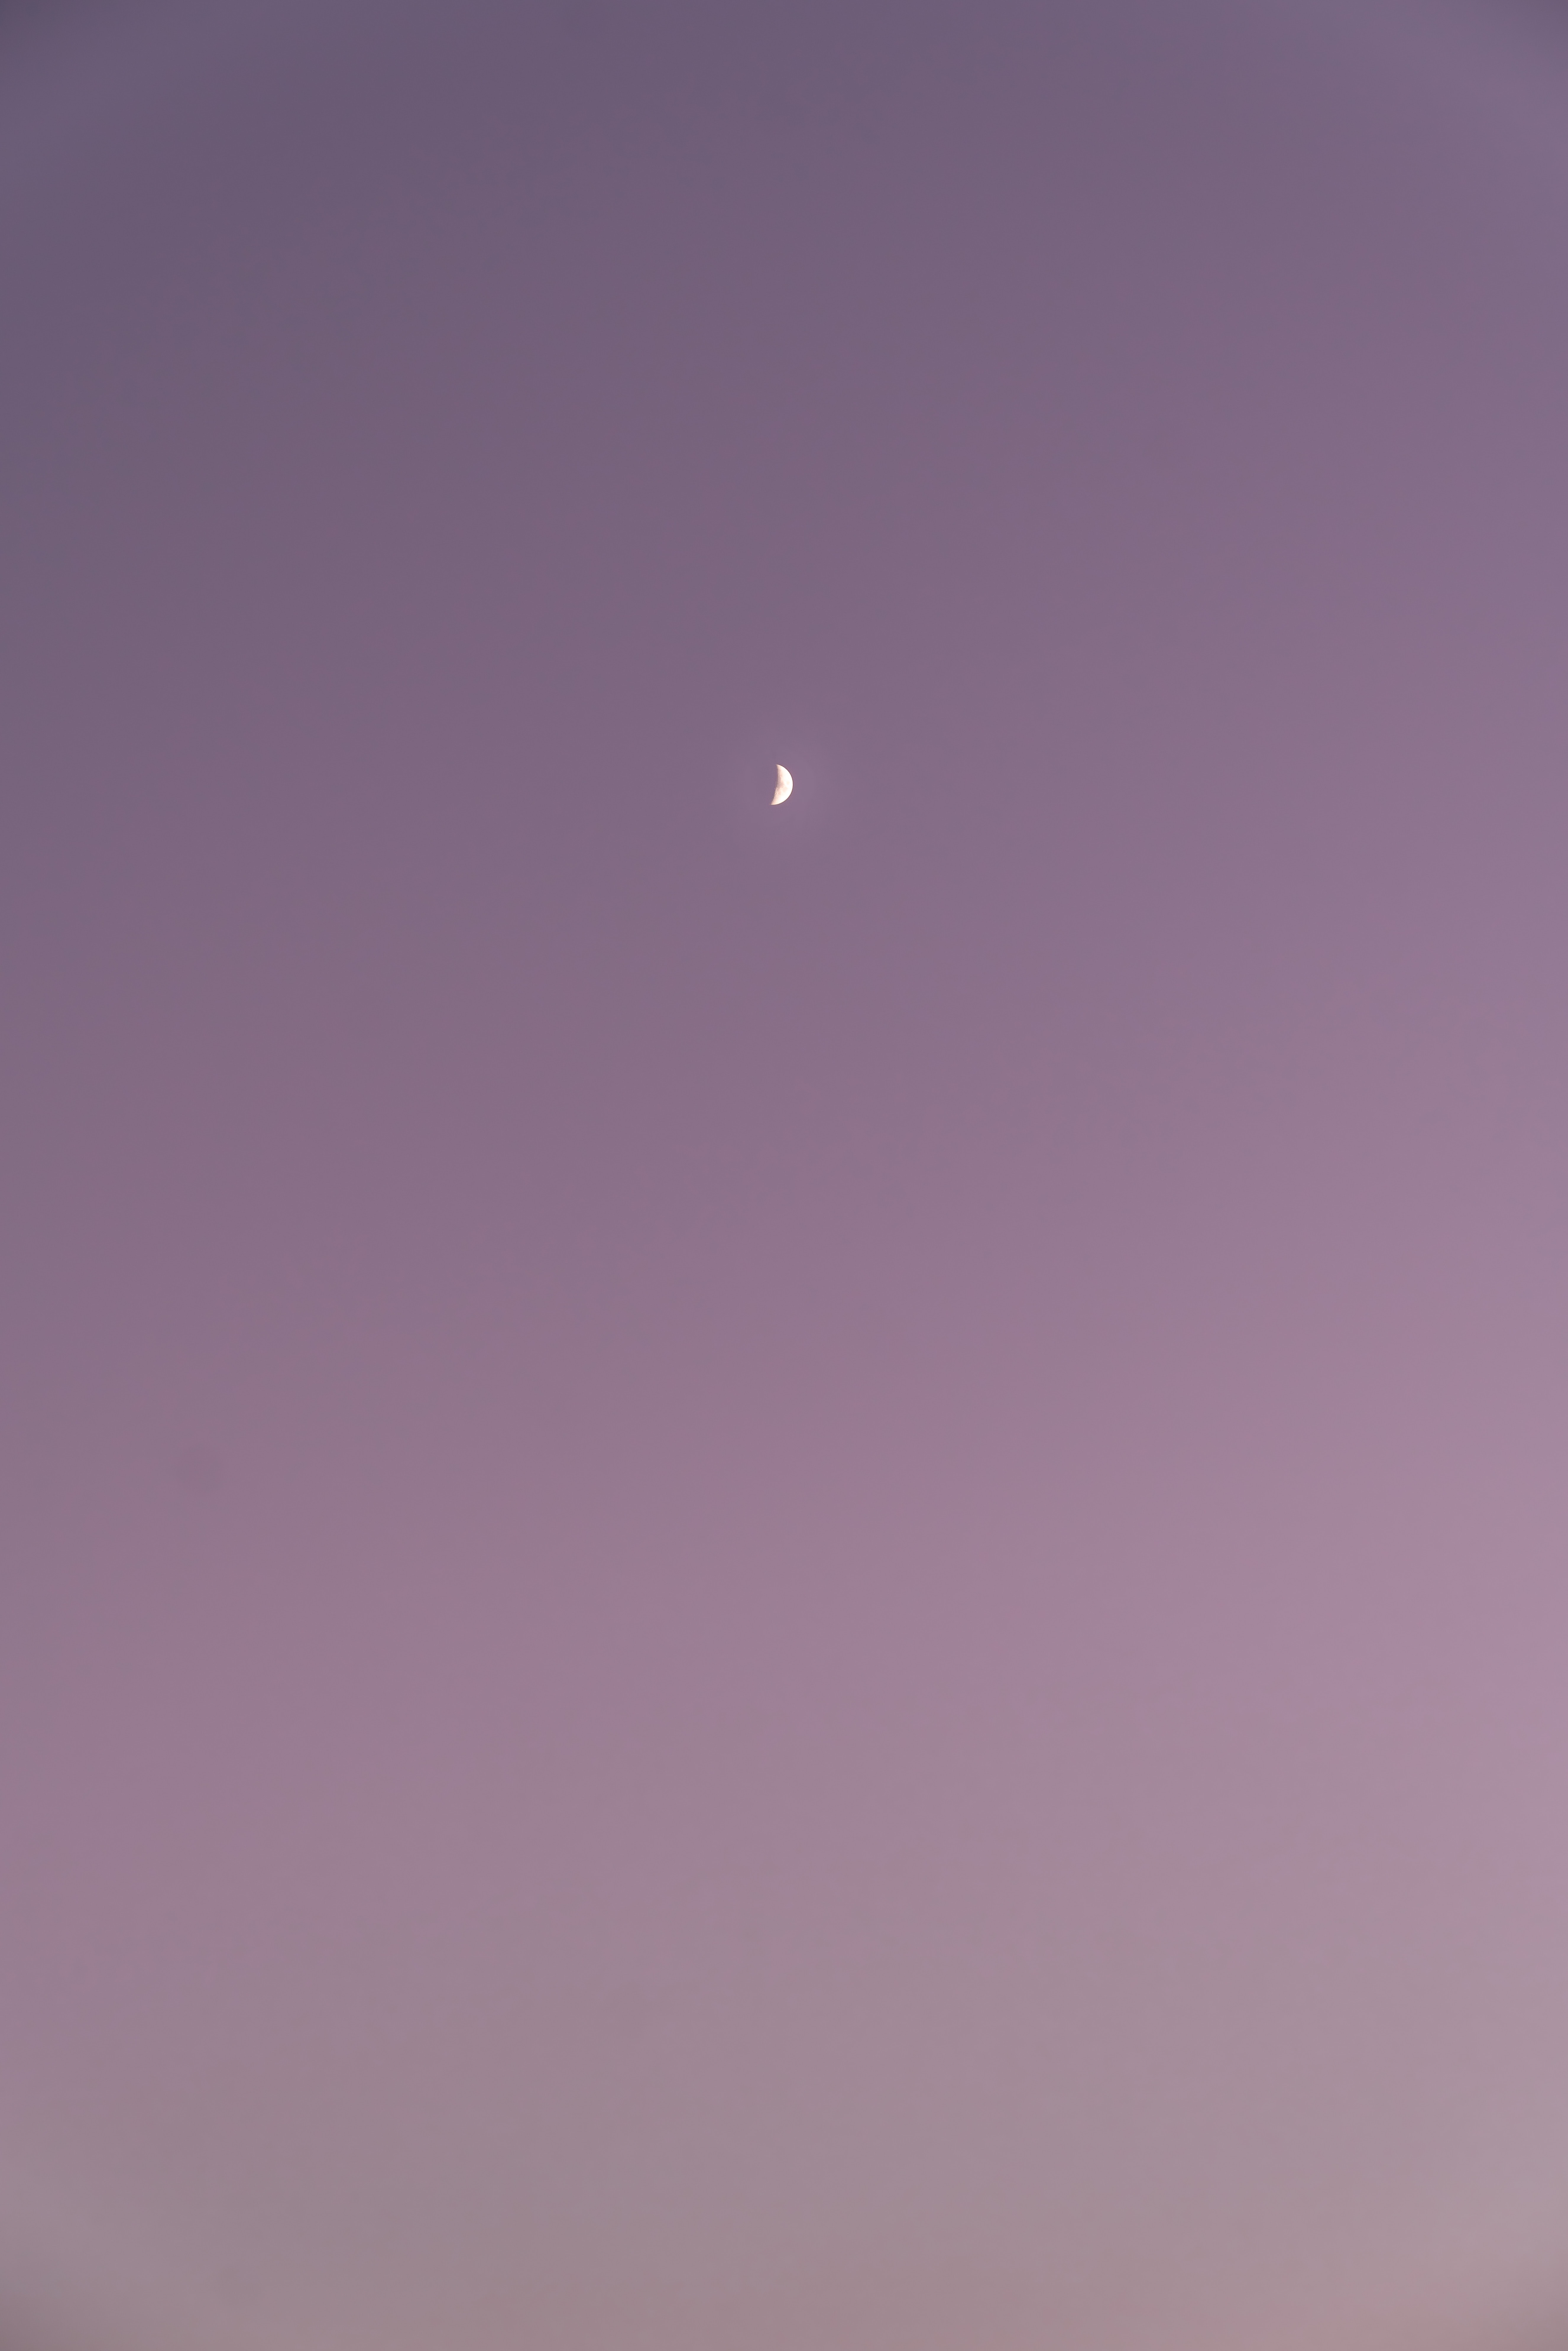 120840 免費下載壁紙 极简主义, 天空, 月球, 紫罗兰色, 紫色的 屏保和圖片